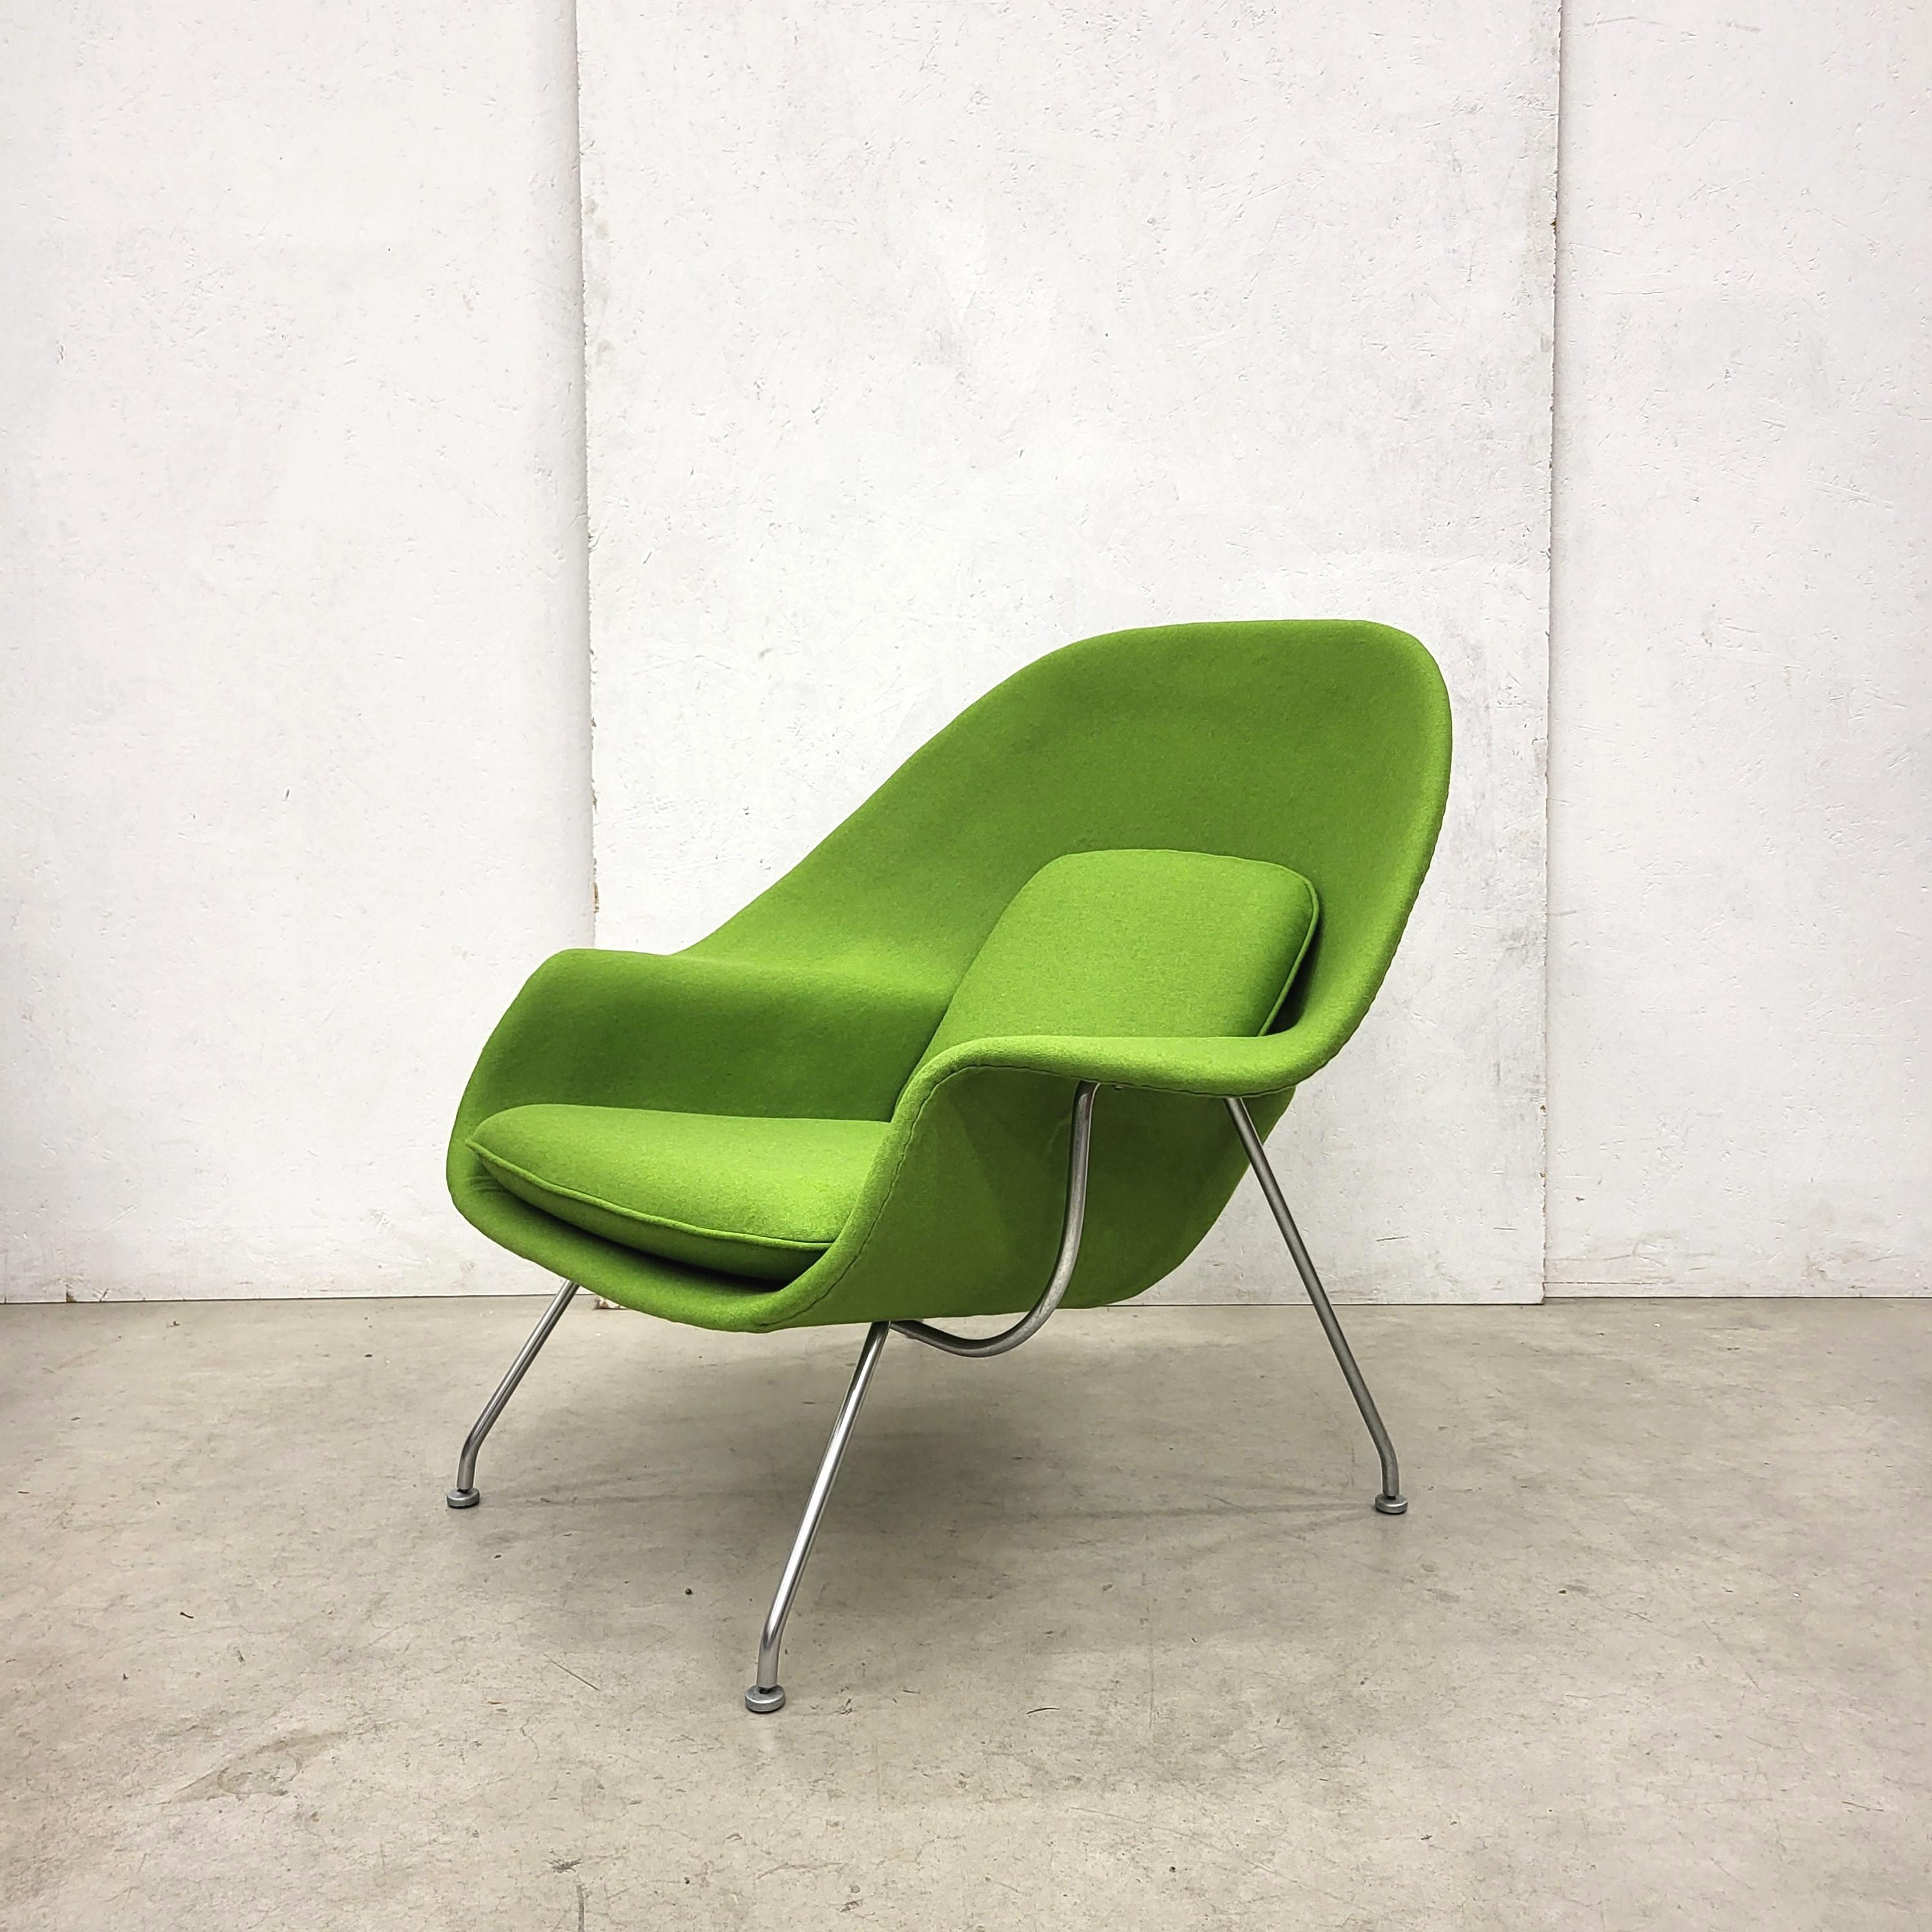 Womb Chair & Ottomane aus Holzgrün von Eero Saarinen für Knoll, 1960er Jahre (Handgefertigt)